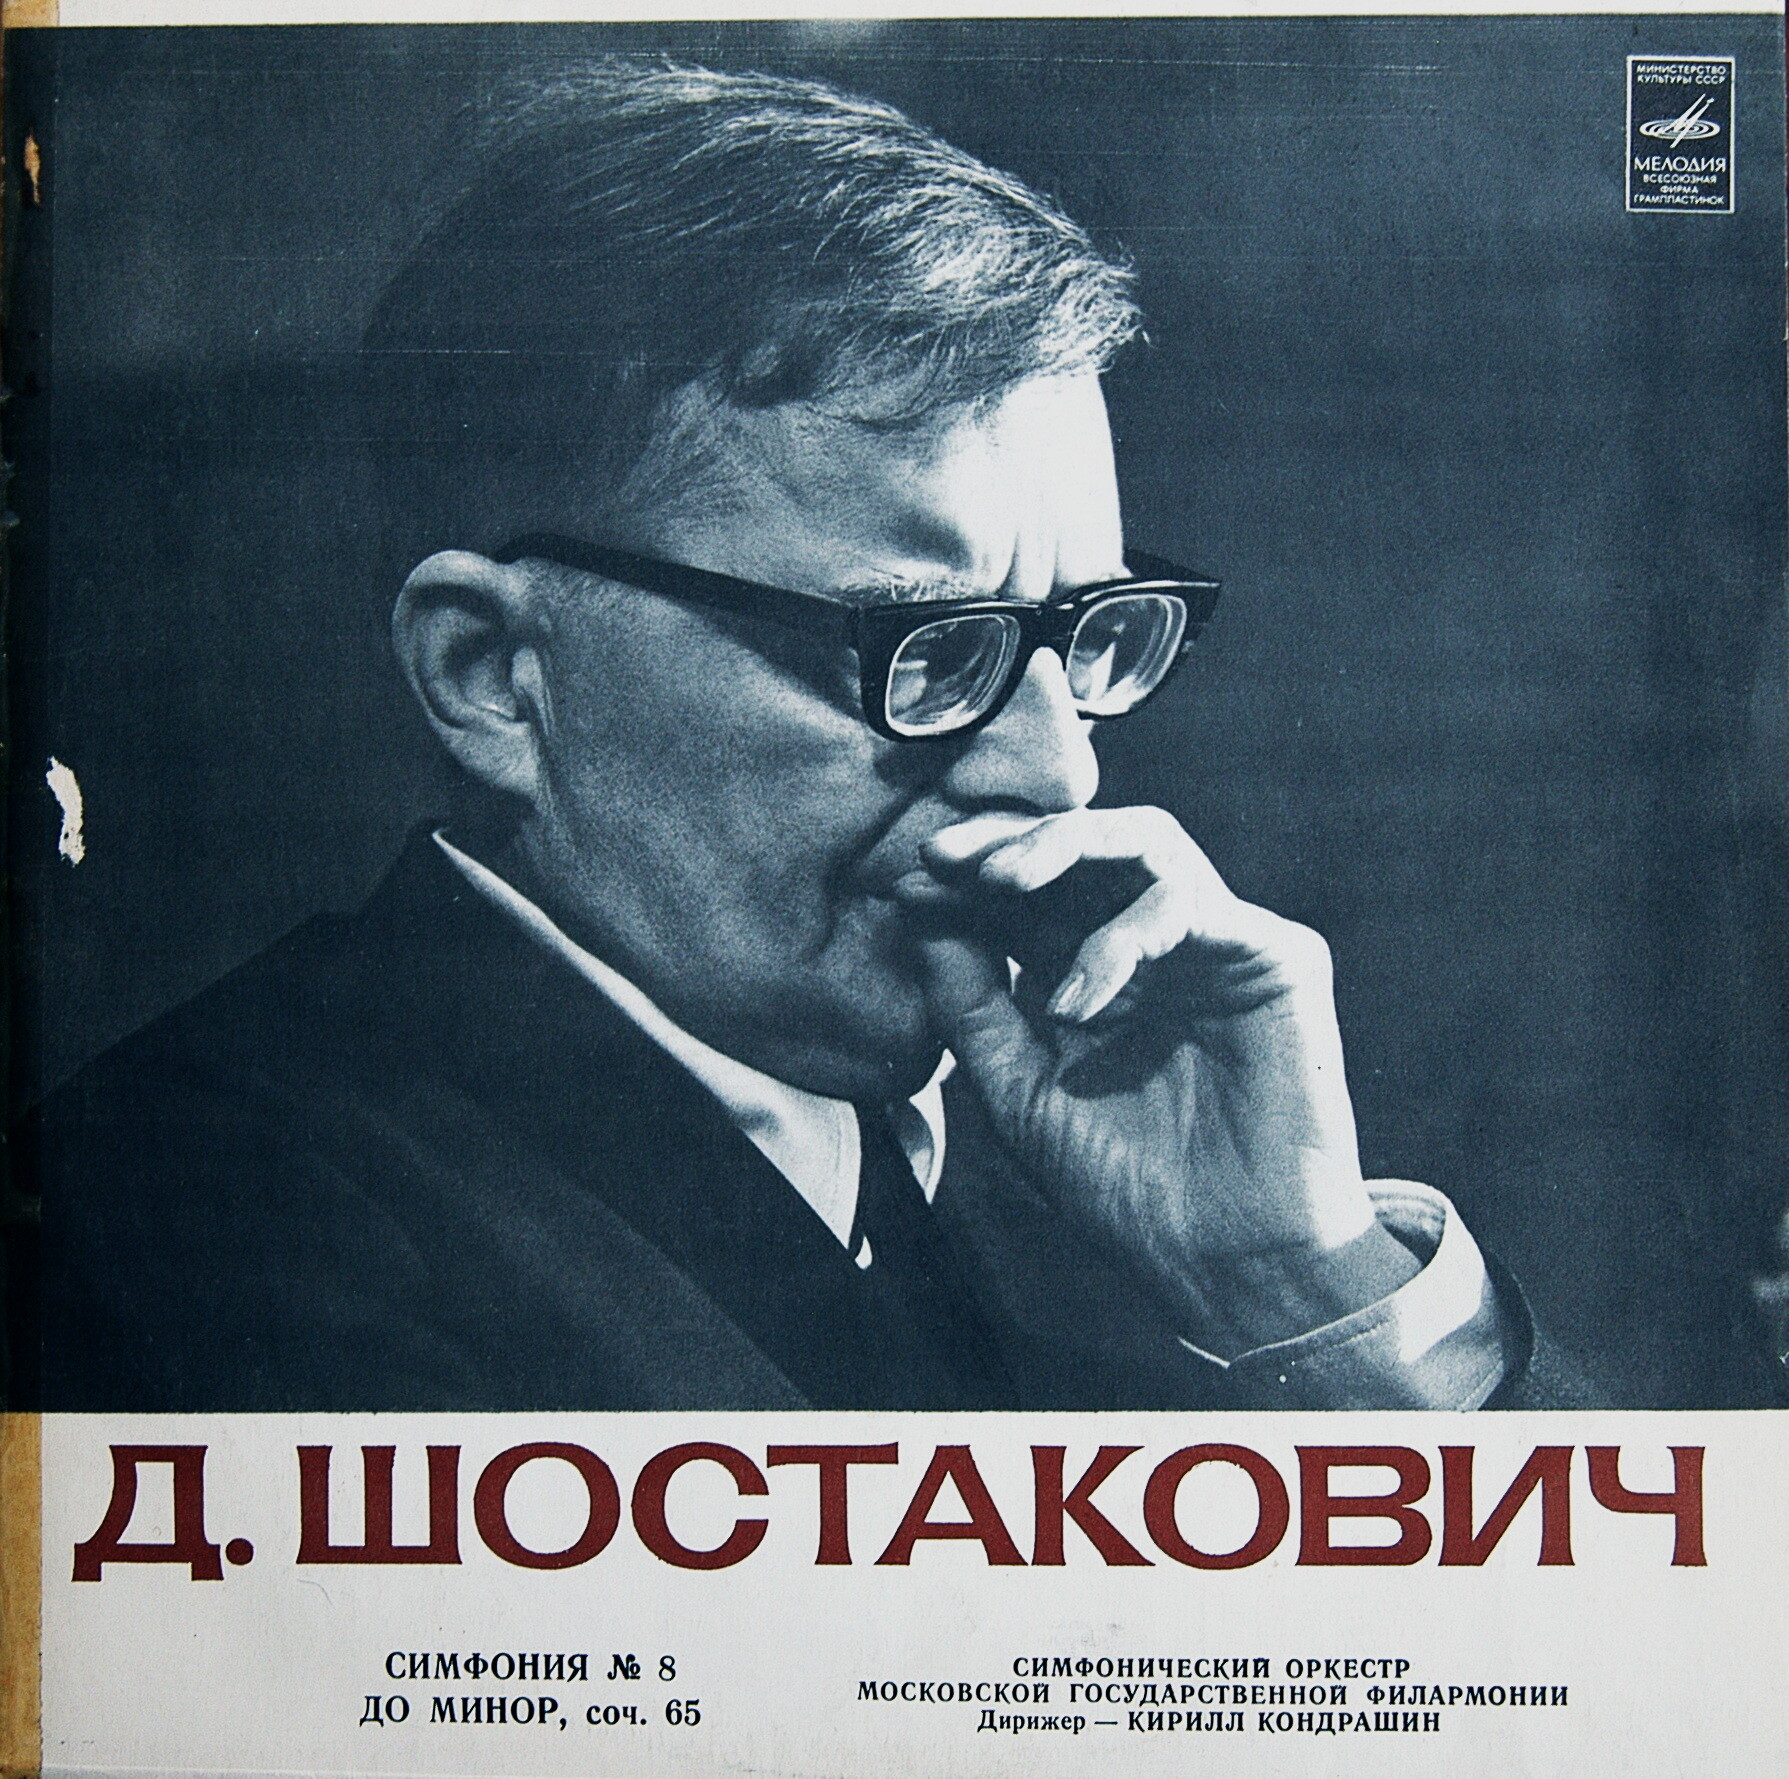 Д. Шостакович: Симфония № 8 (К. Кондрашин)